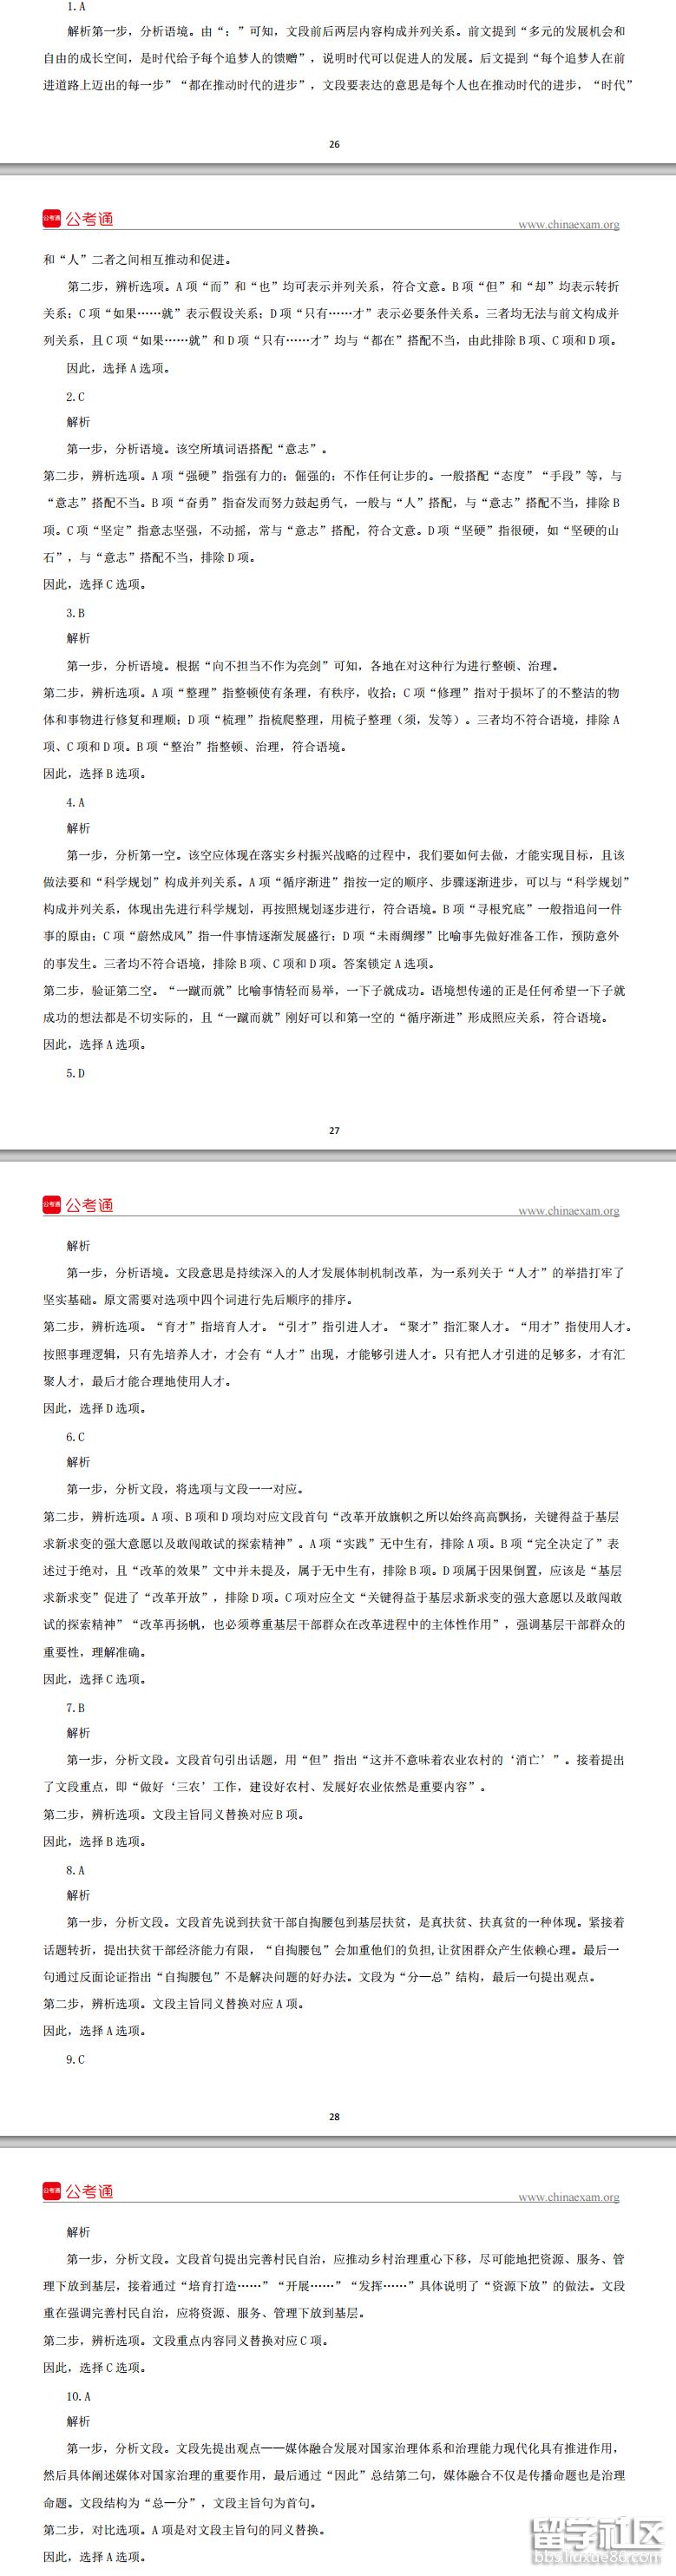 2023年廣東省公務員考試答案:言語理解和表達(鄉鎮級)